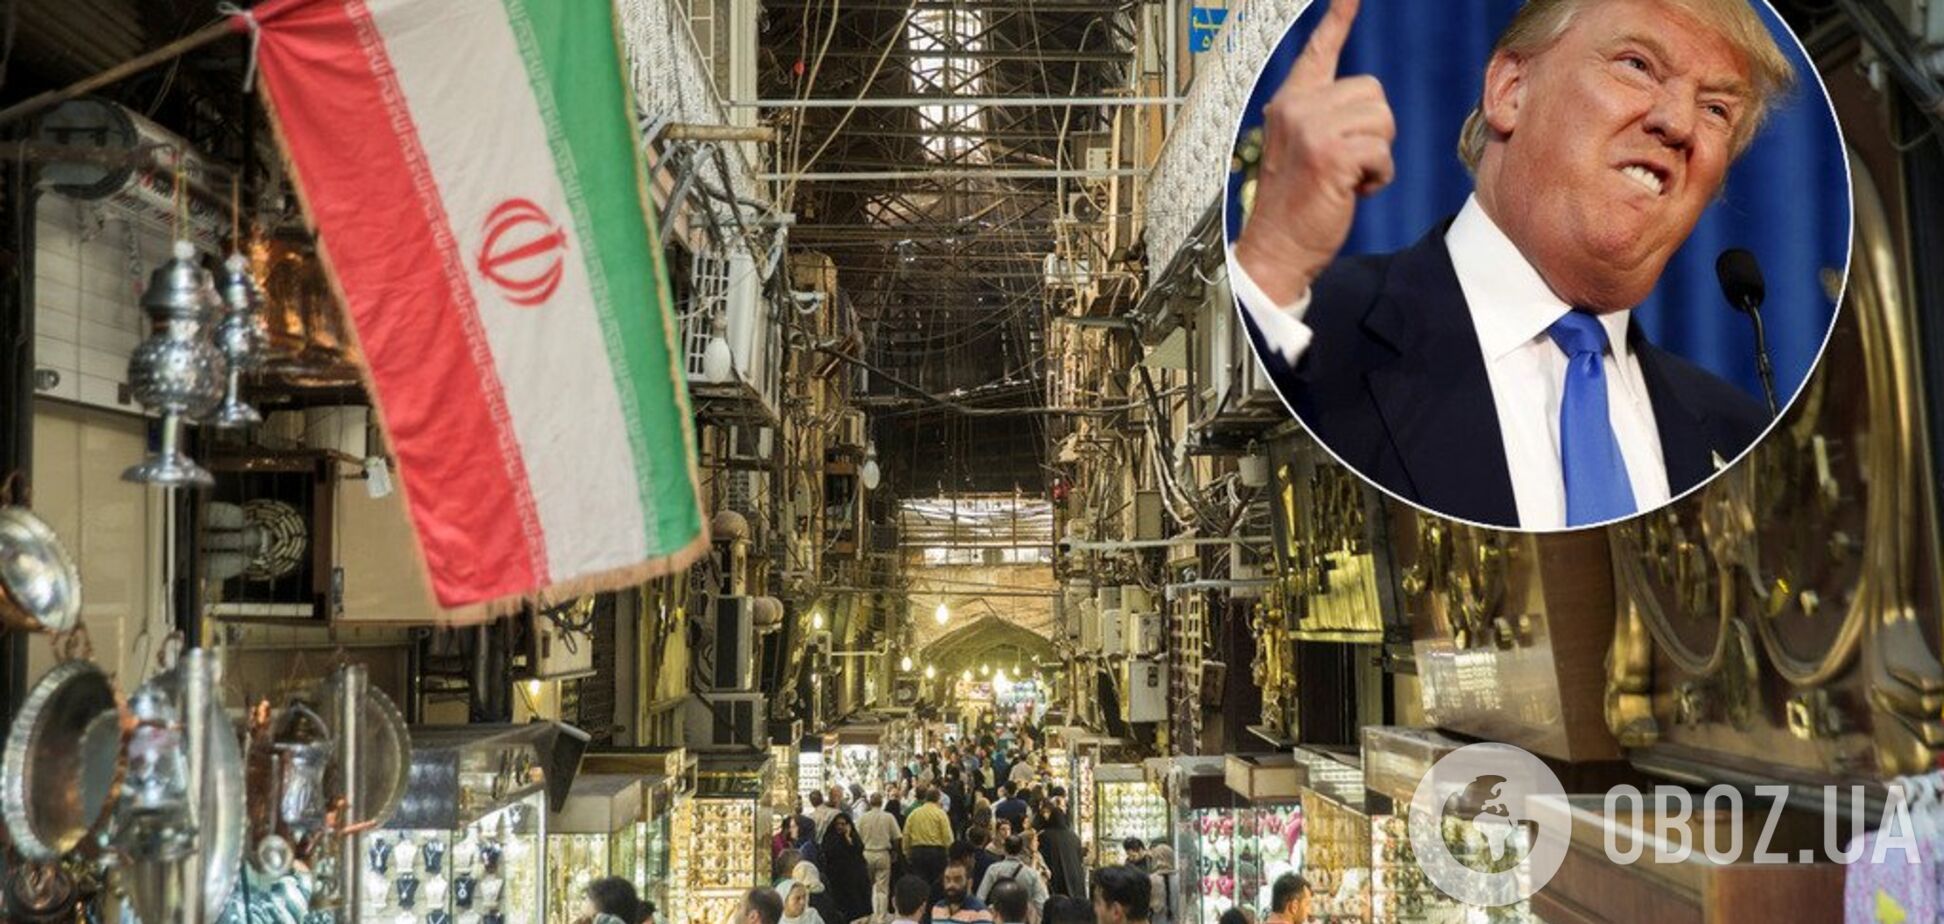 'Готовы заключить мир': Трамп отреагировал на новые санкции против Ирана